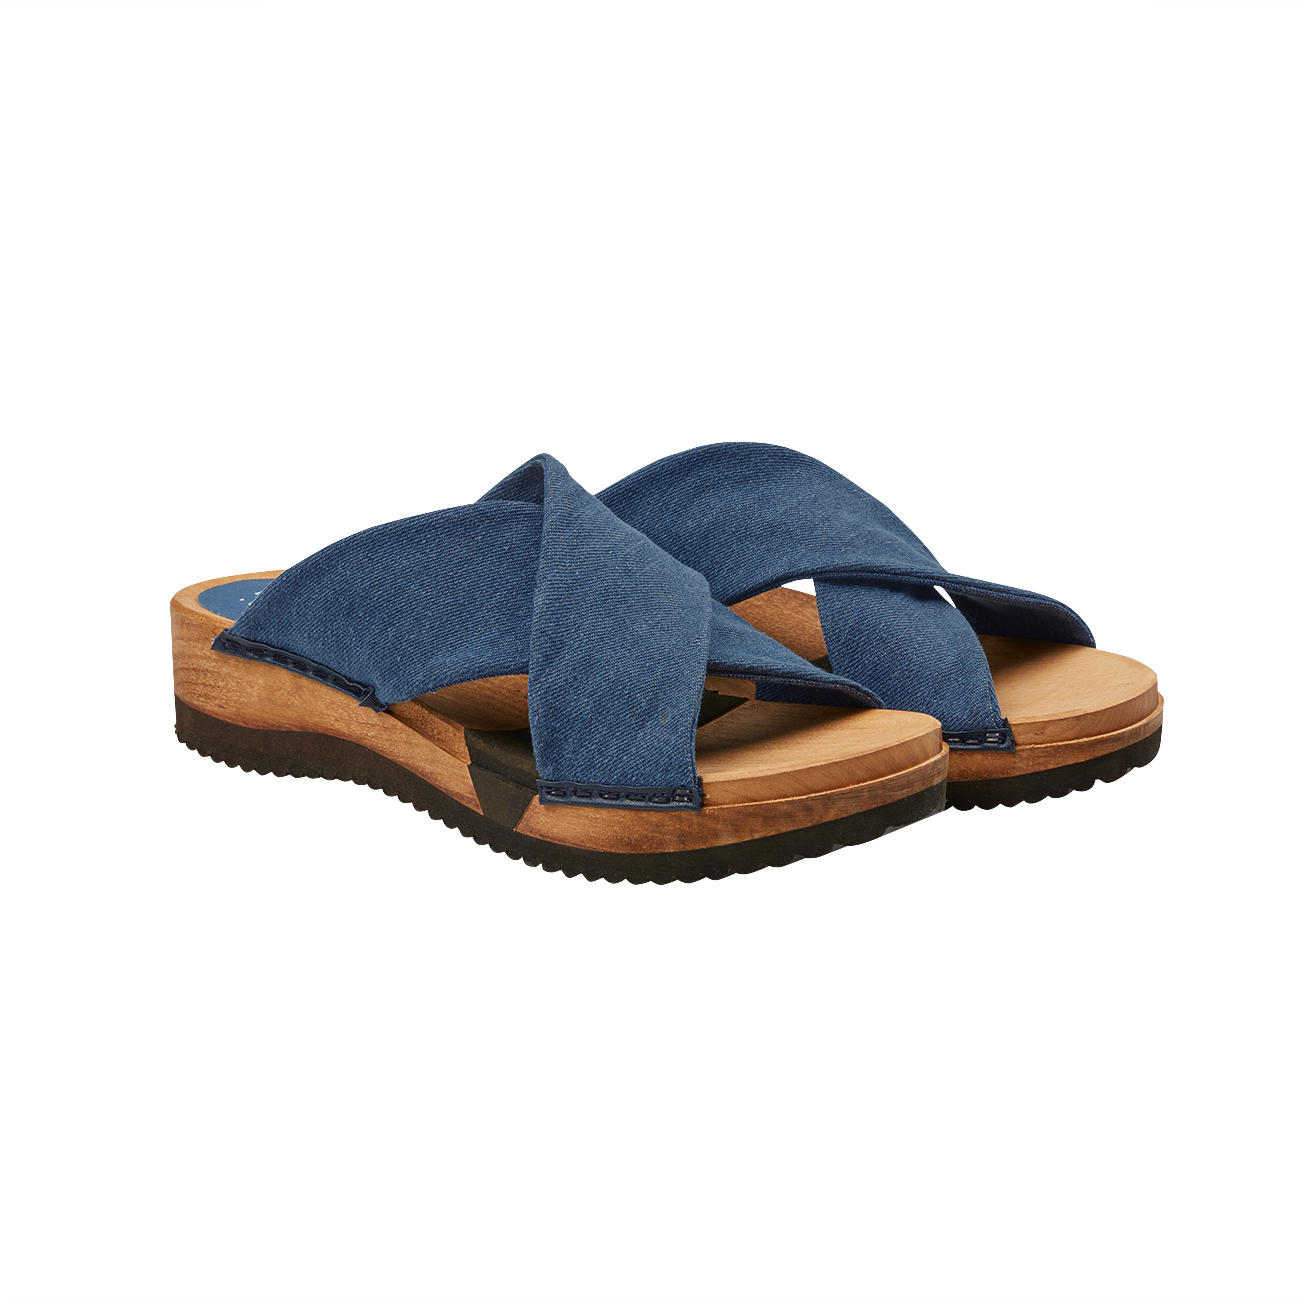 Aanleg adelaar kanaal Sanita® houten slippers | Mode-Klassiker entdecken